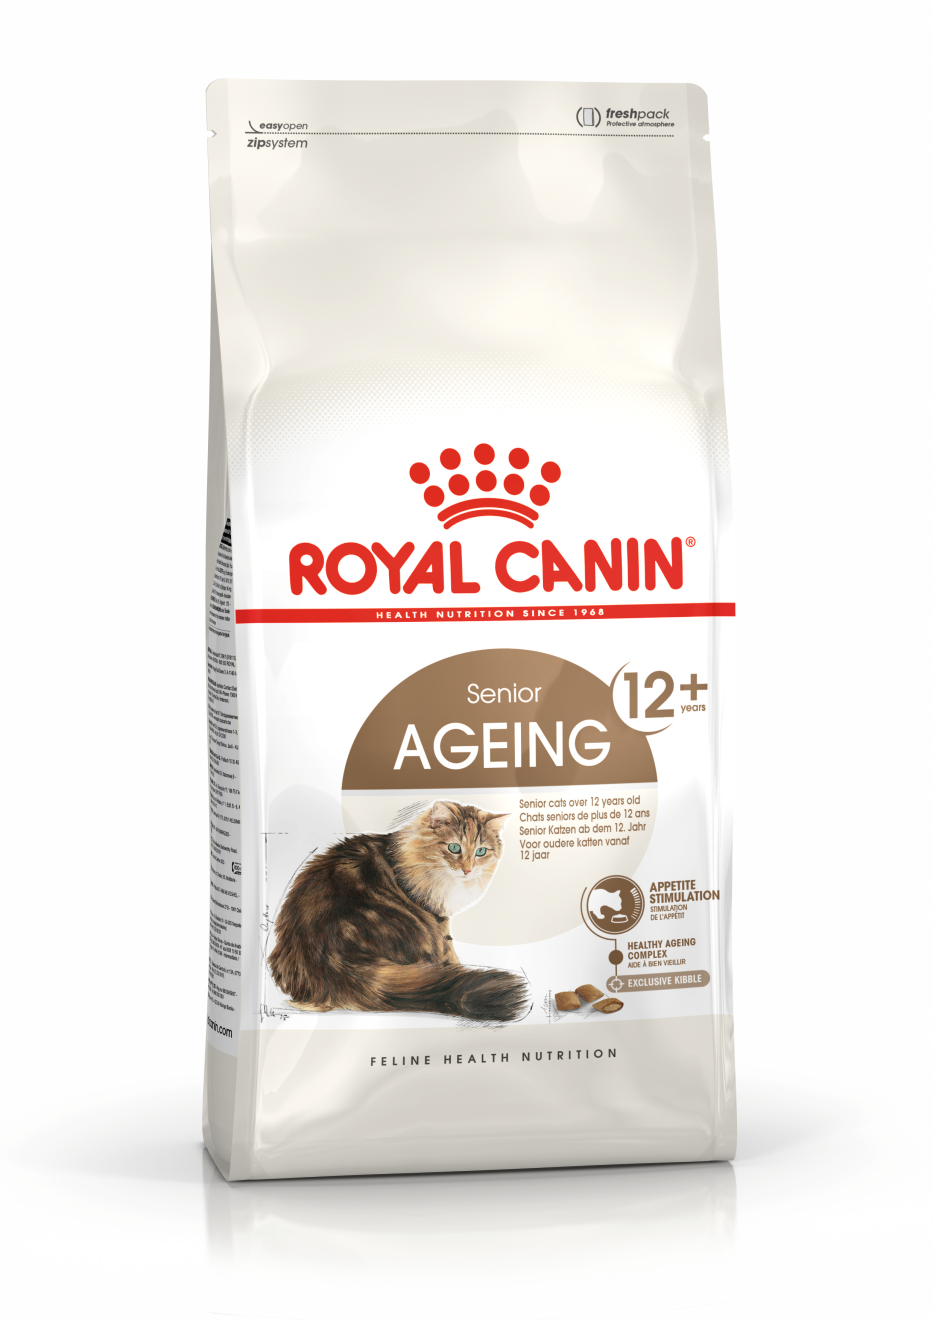 Royal Canin Ageing 12+ - Aliment pour chats seniors de plus de 12 ans. - 400g